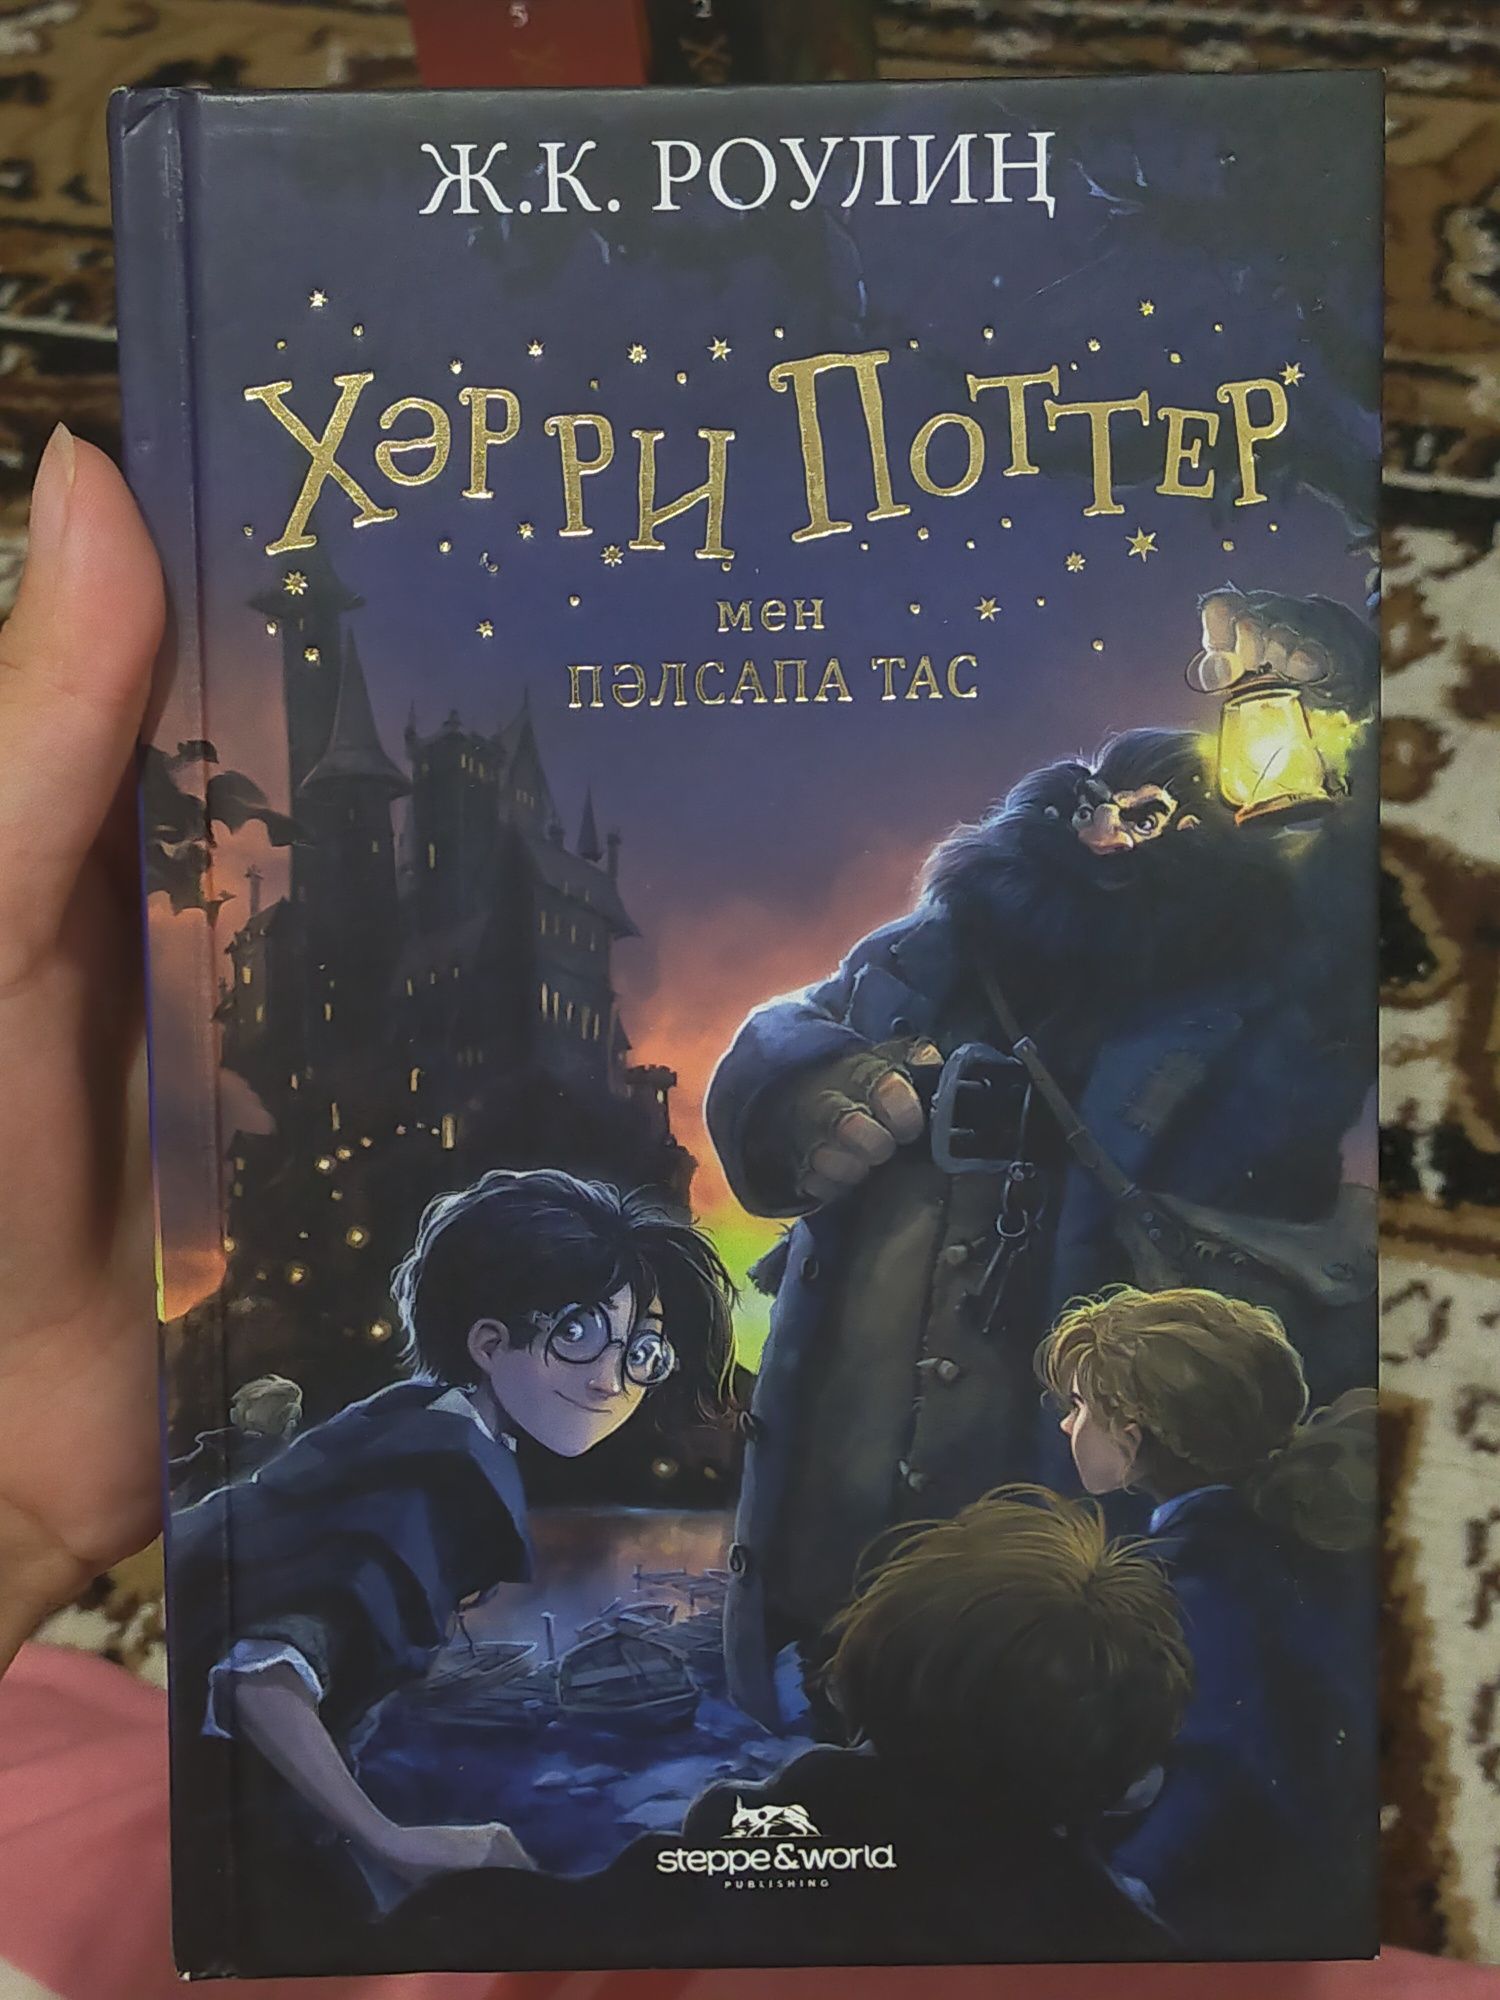 Продаются книги по Гарри Поттеру на казахском языке.